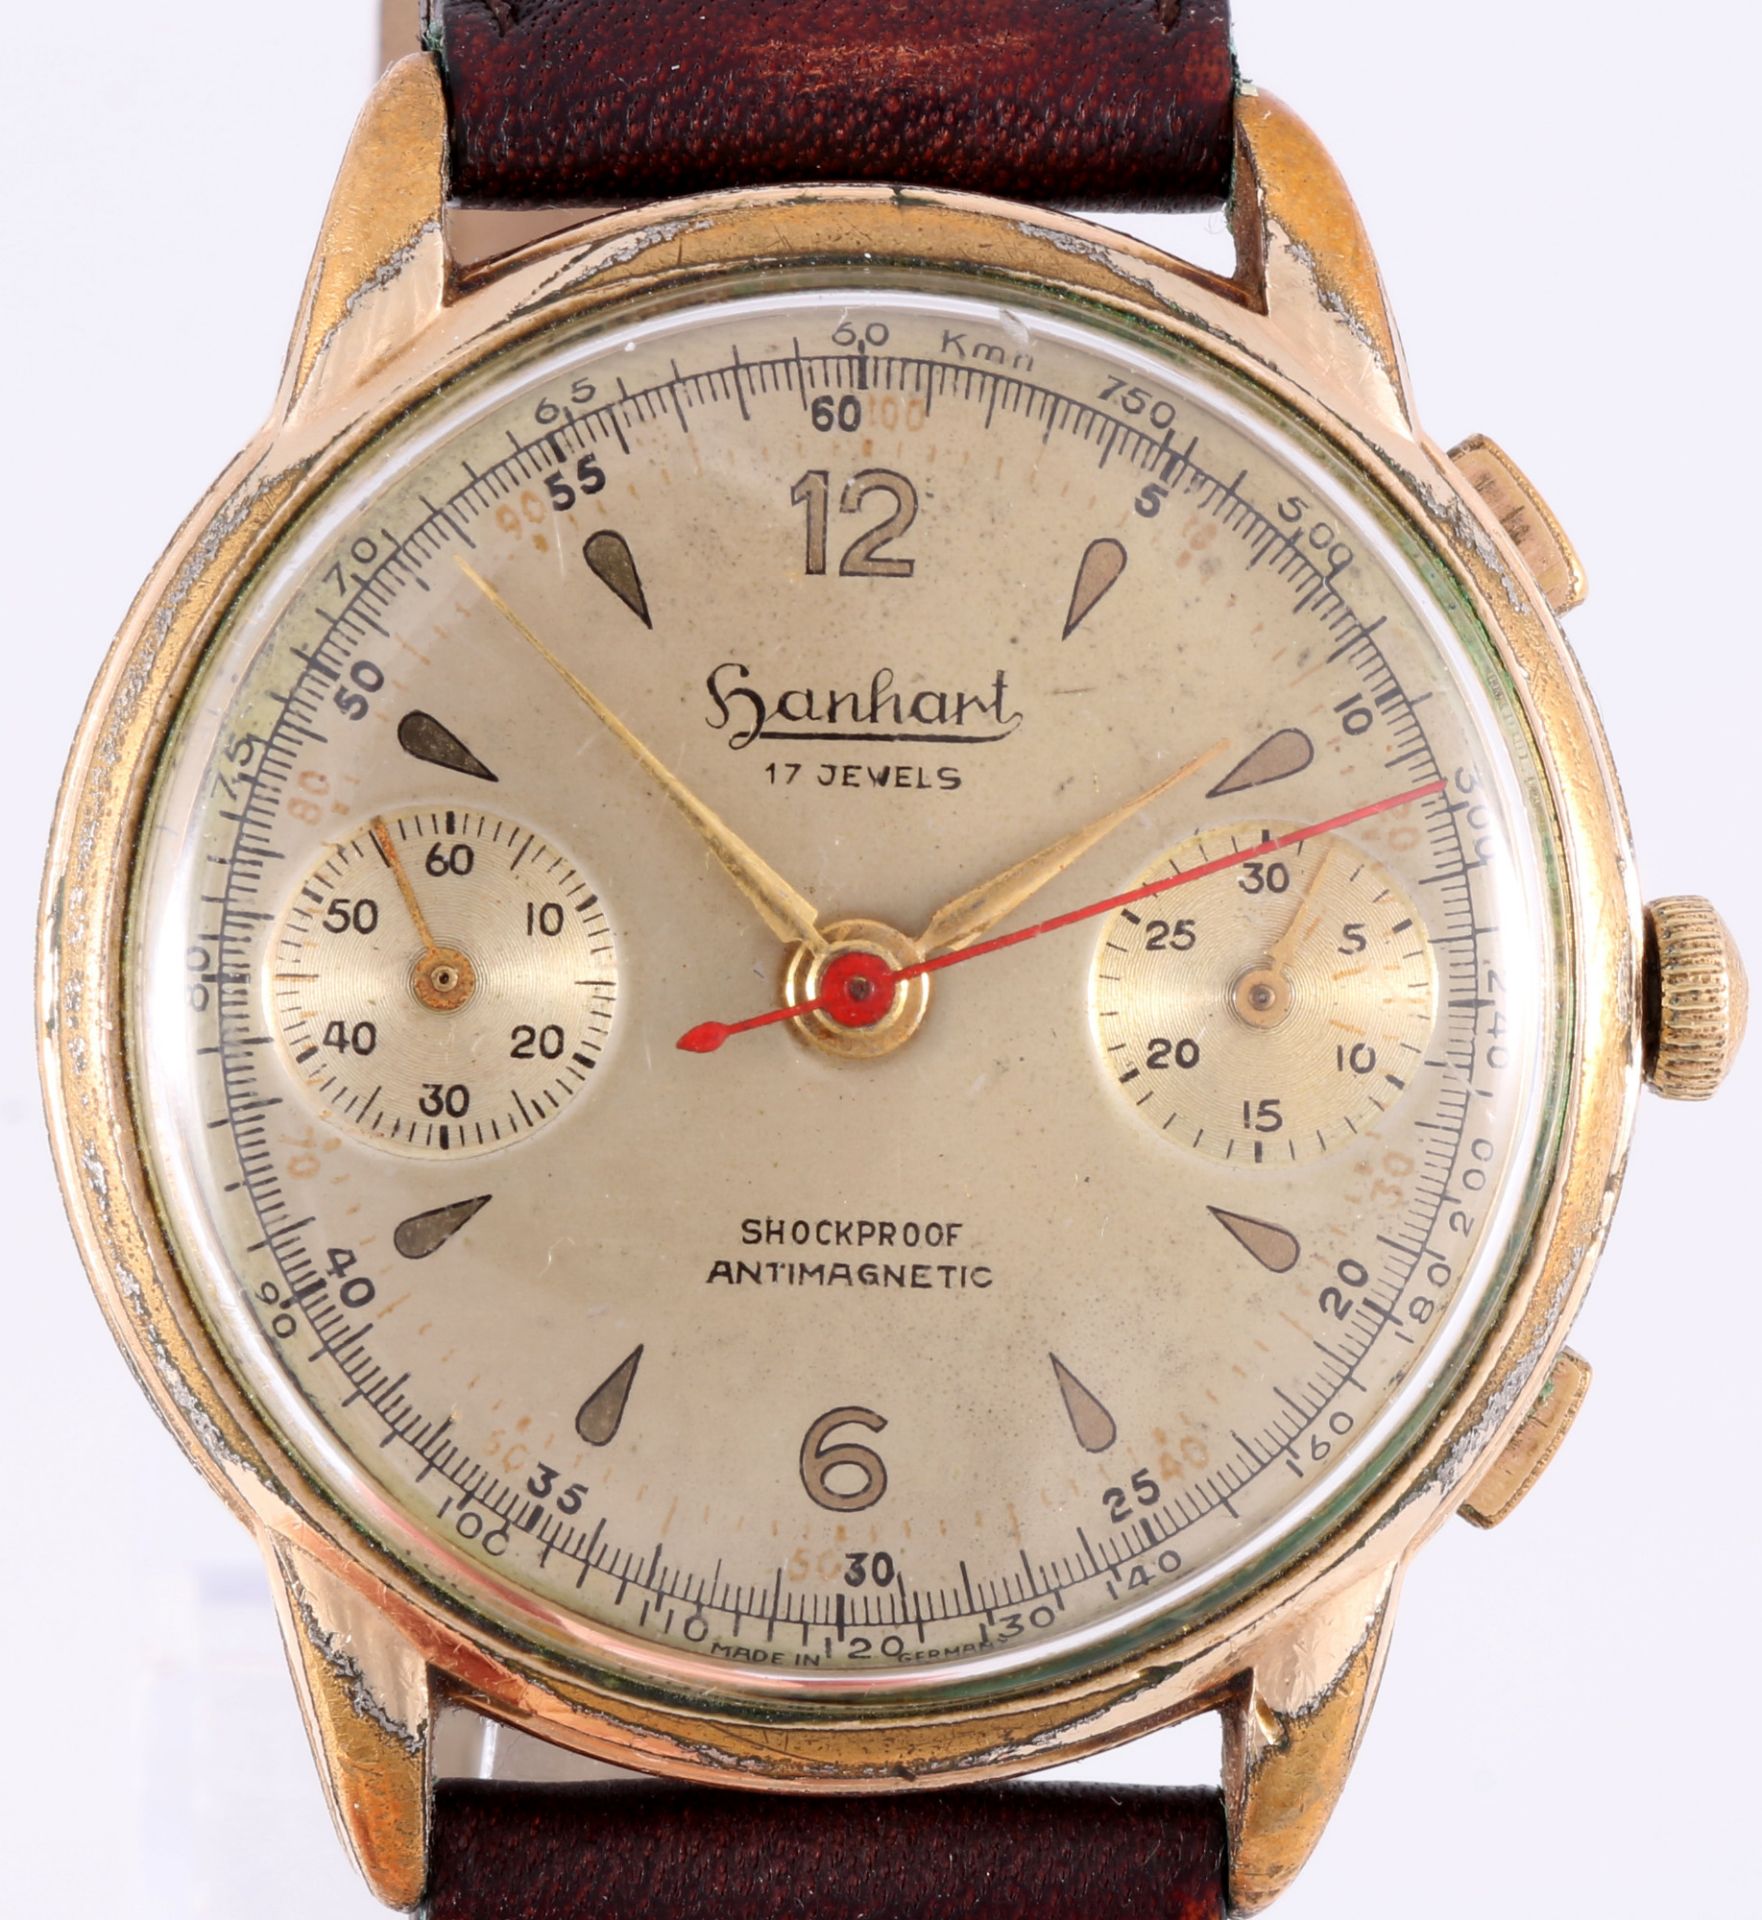 Hanhart men's aviator chronograph wrist watch, Herren Fliegerchronograph, - Image 2 of 7